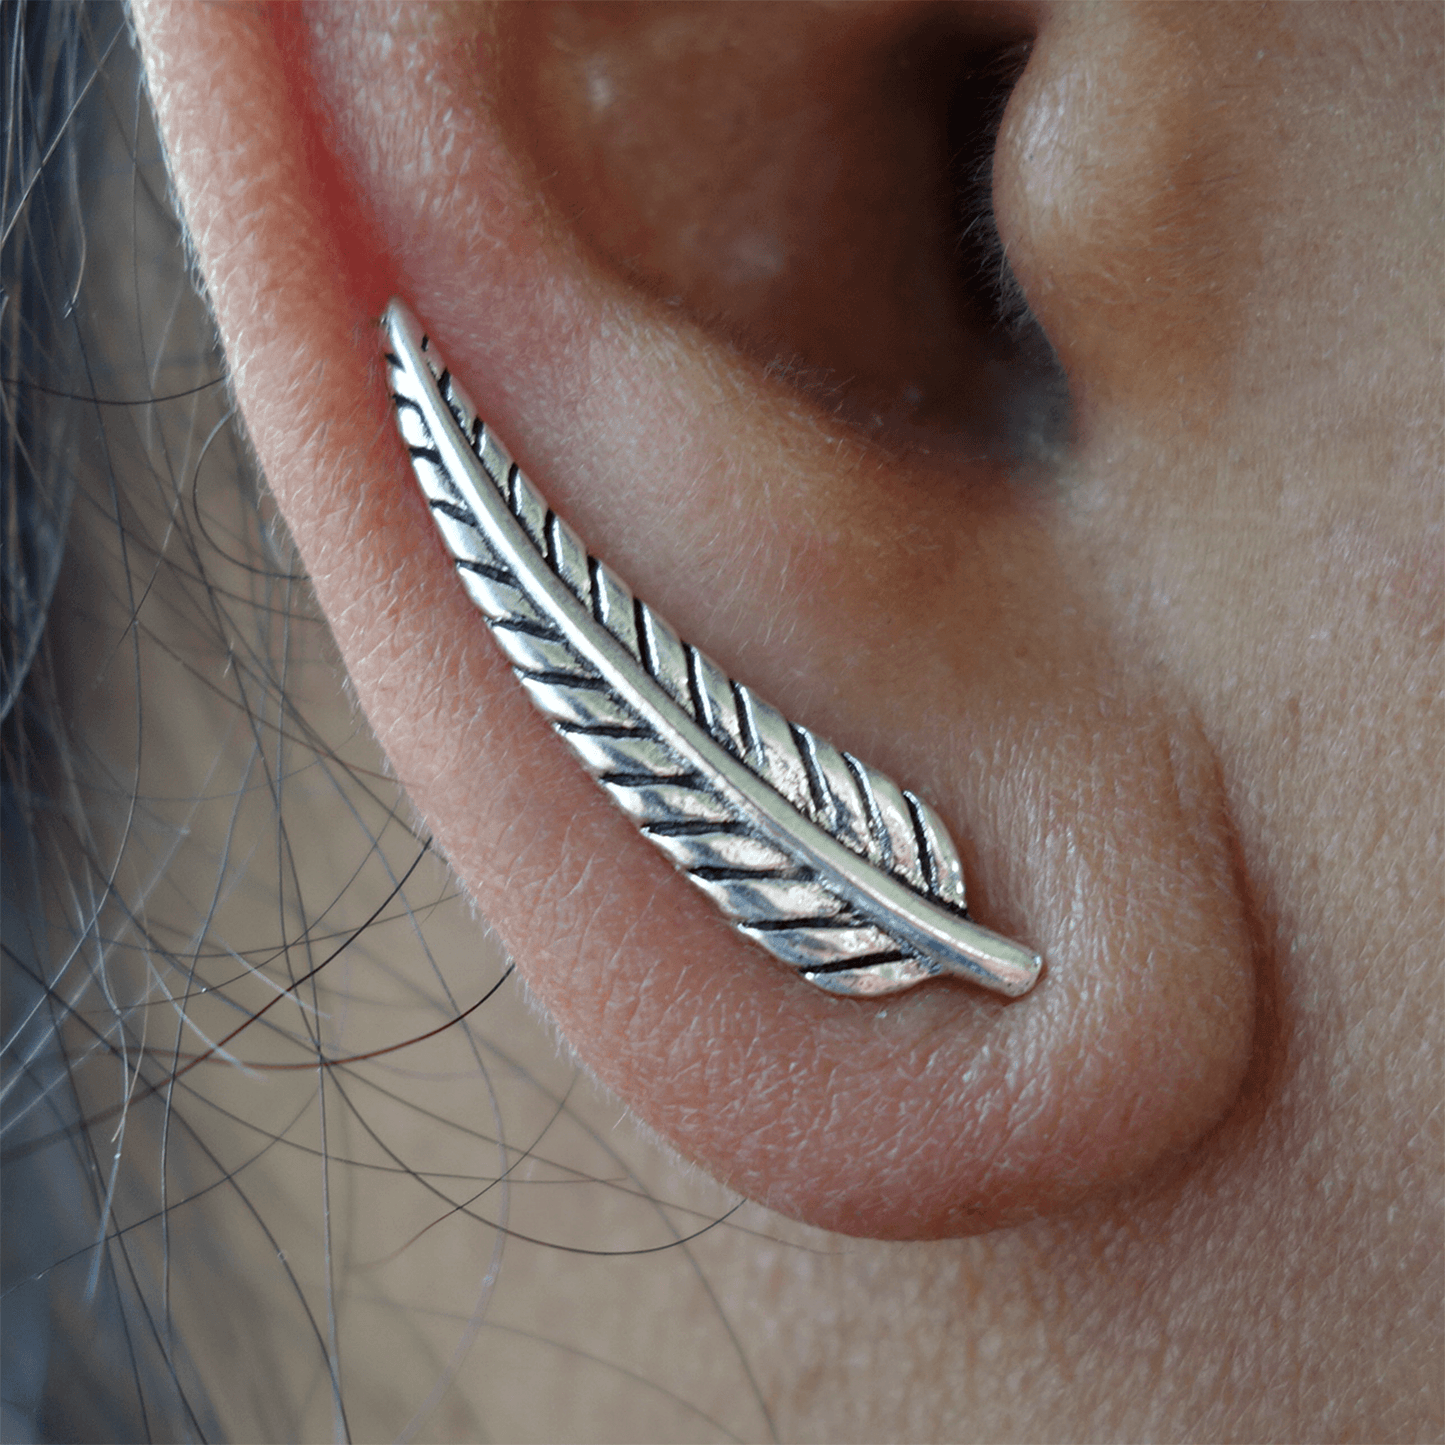 Pair of 925 Sterling Silver Stud Earrings Hook Ear Studs Womens Ladies Jewellery